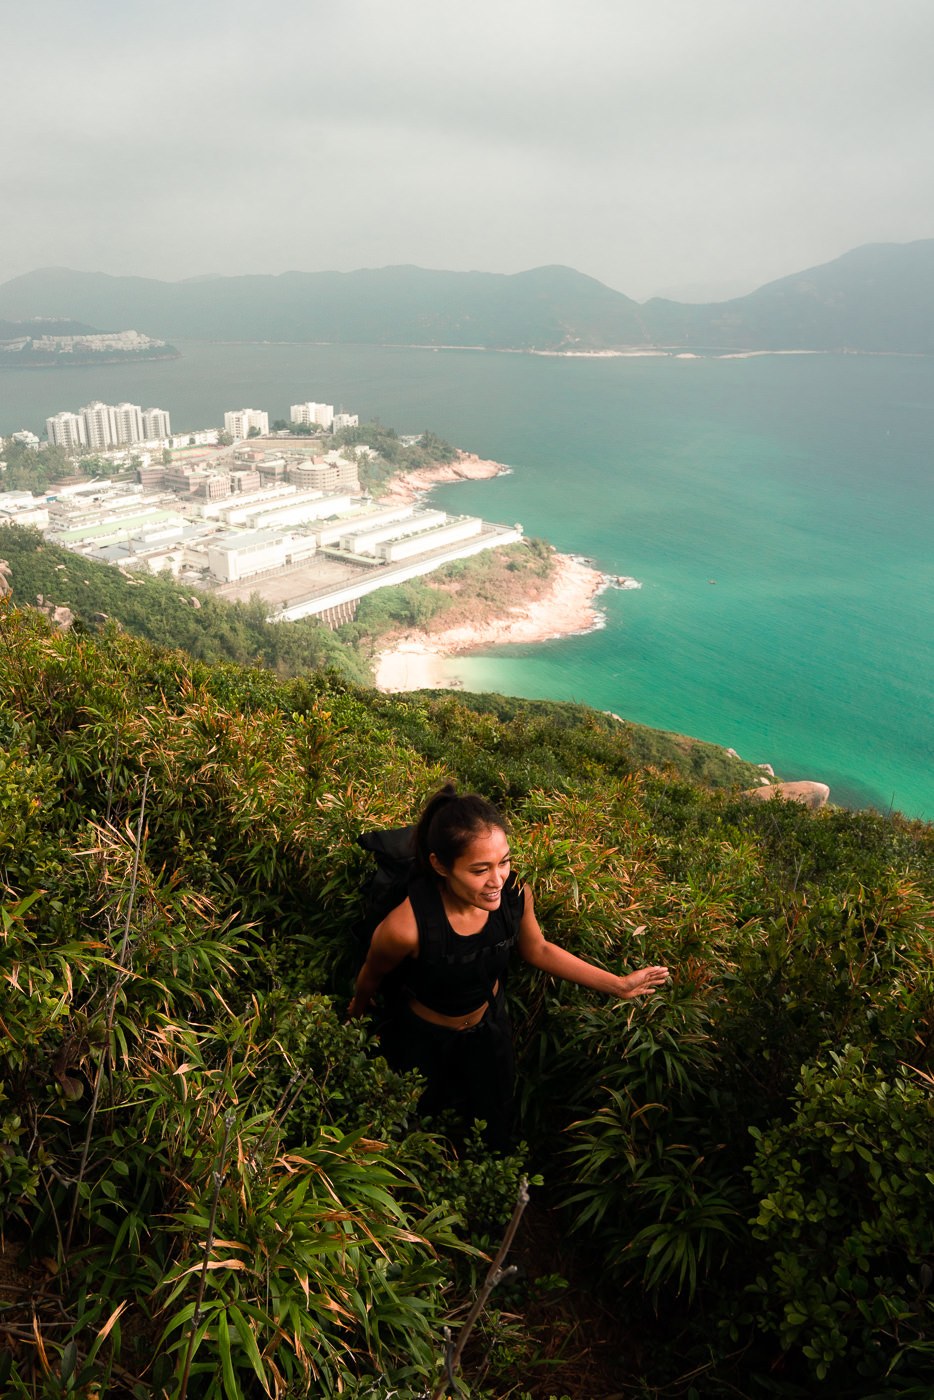 a woman hiking up a steep hill near the ocean.